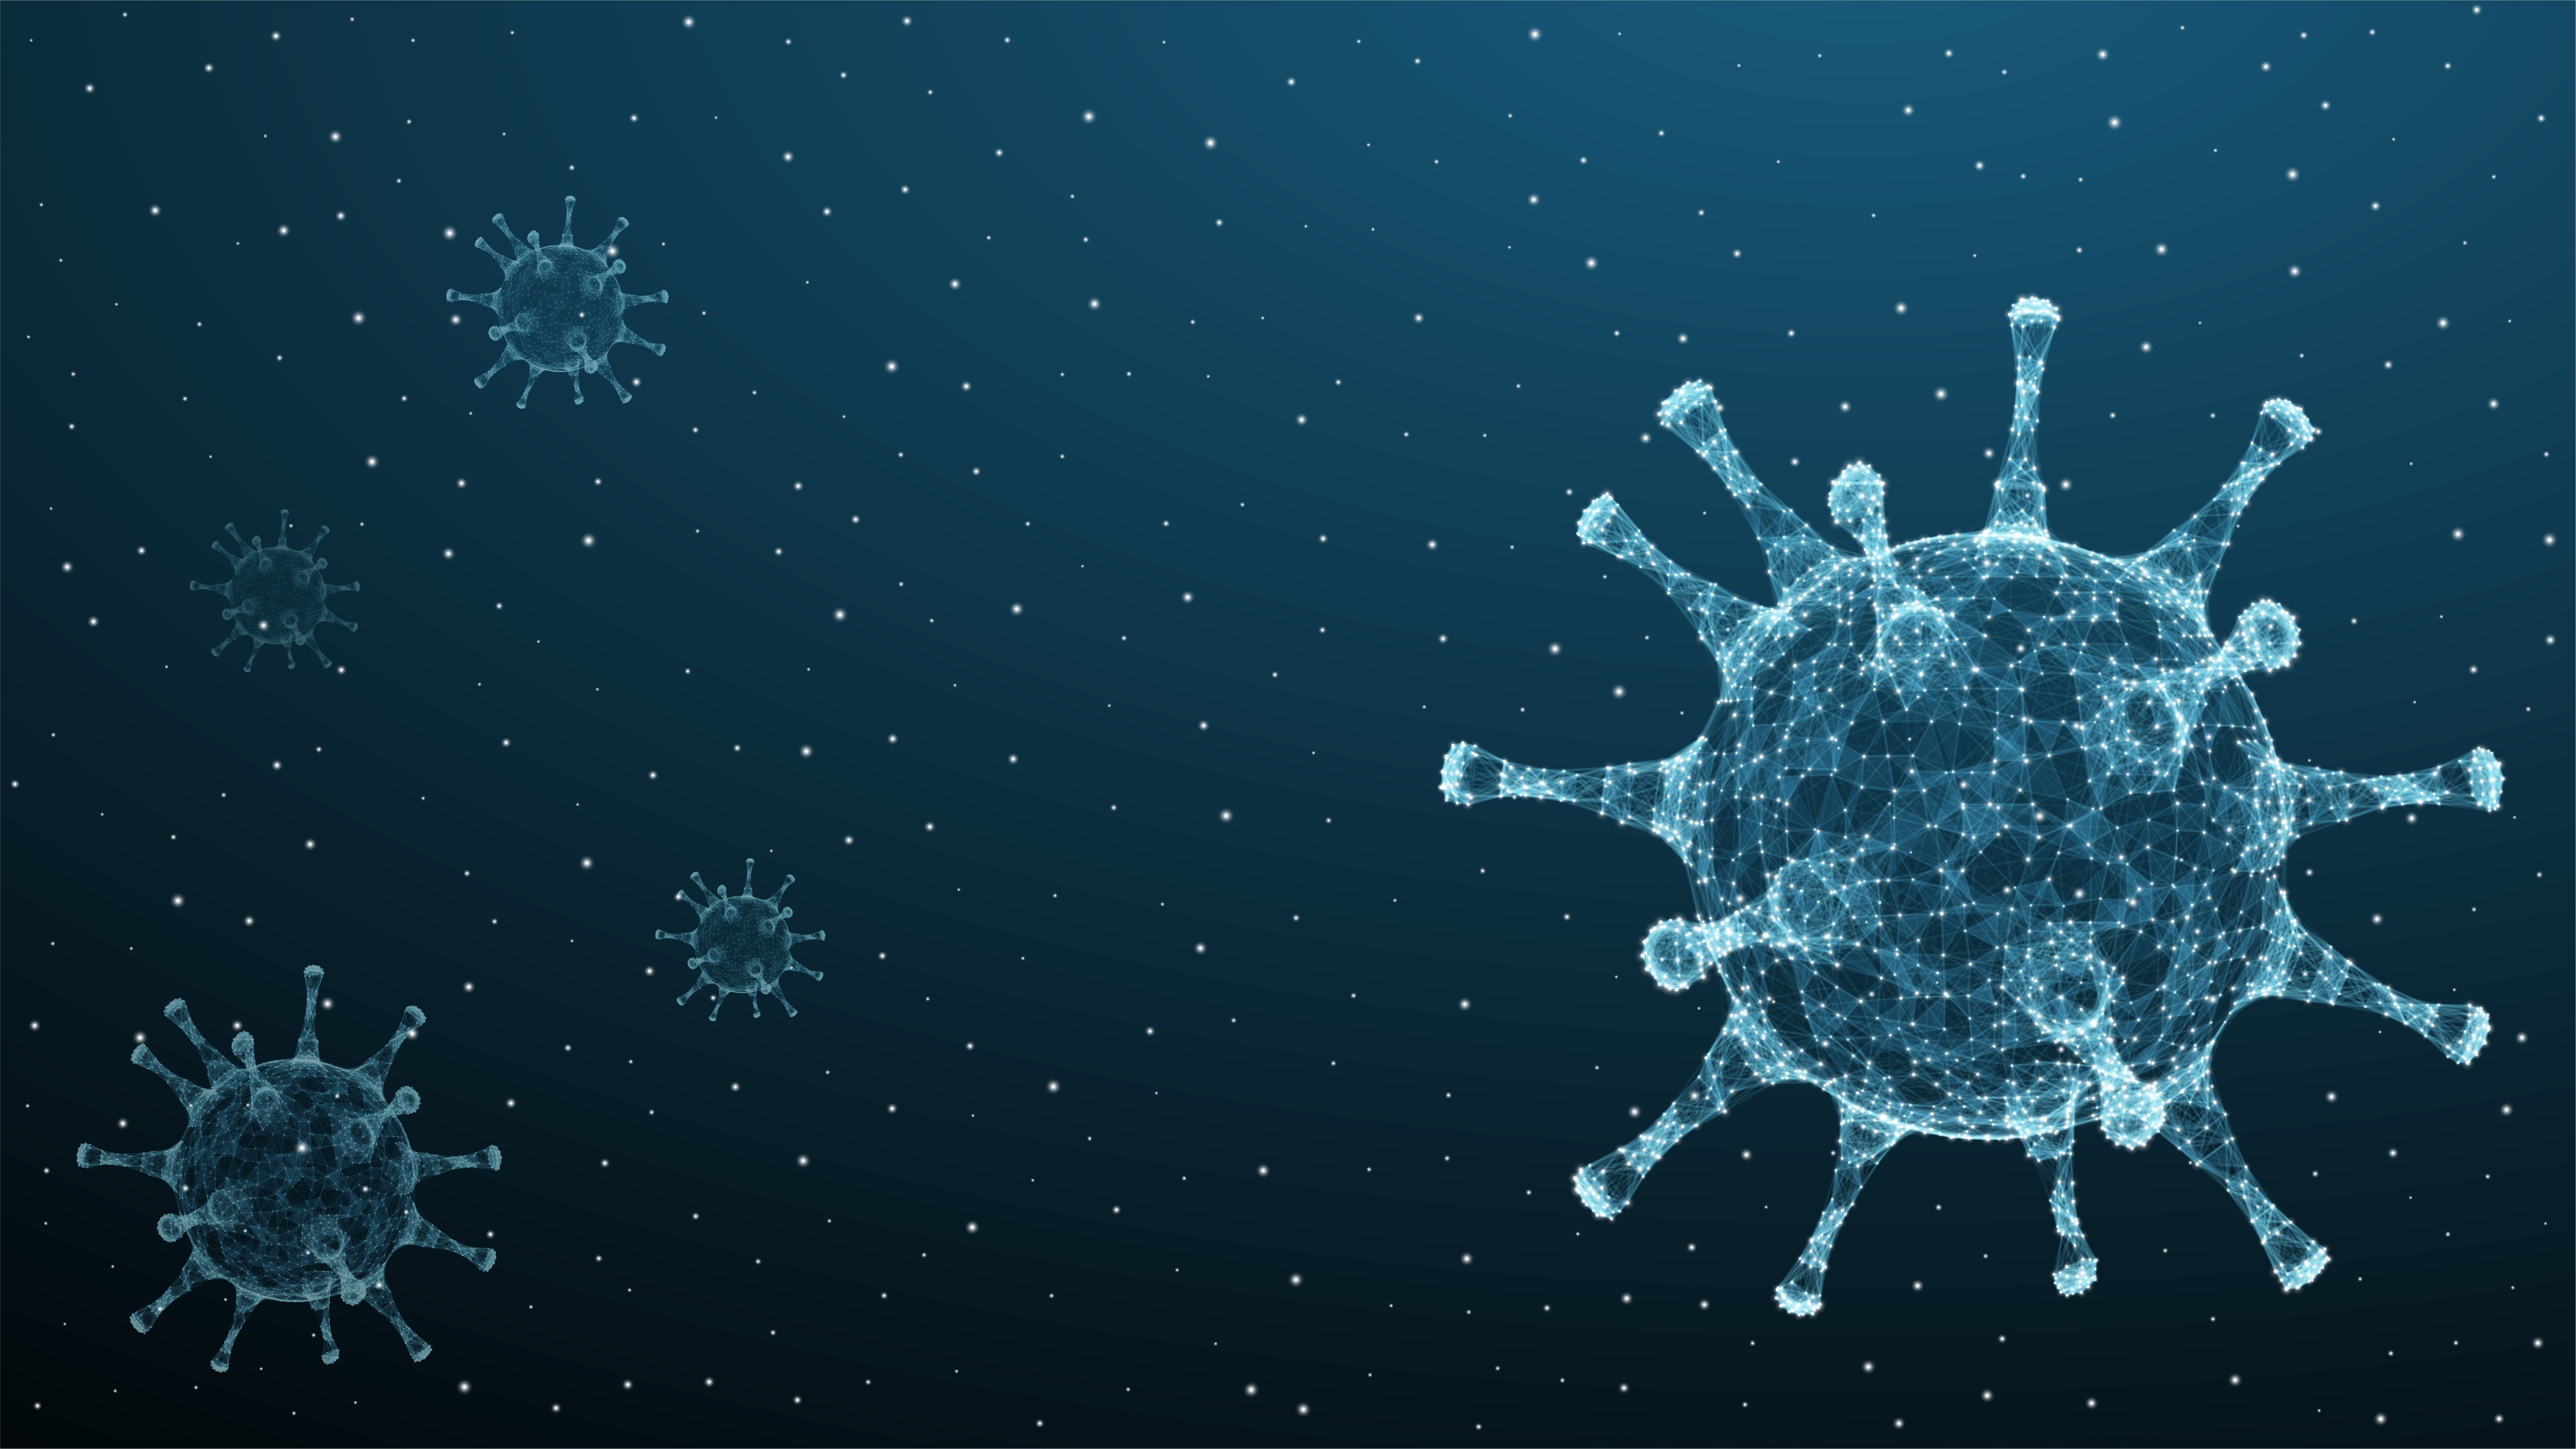 Emergency Coronavirus Regulation Extended For 30 Days